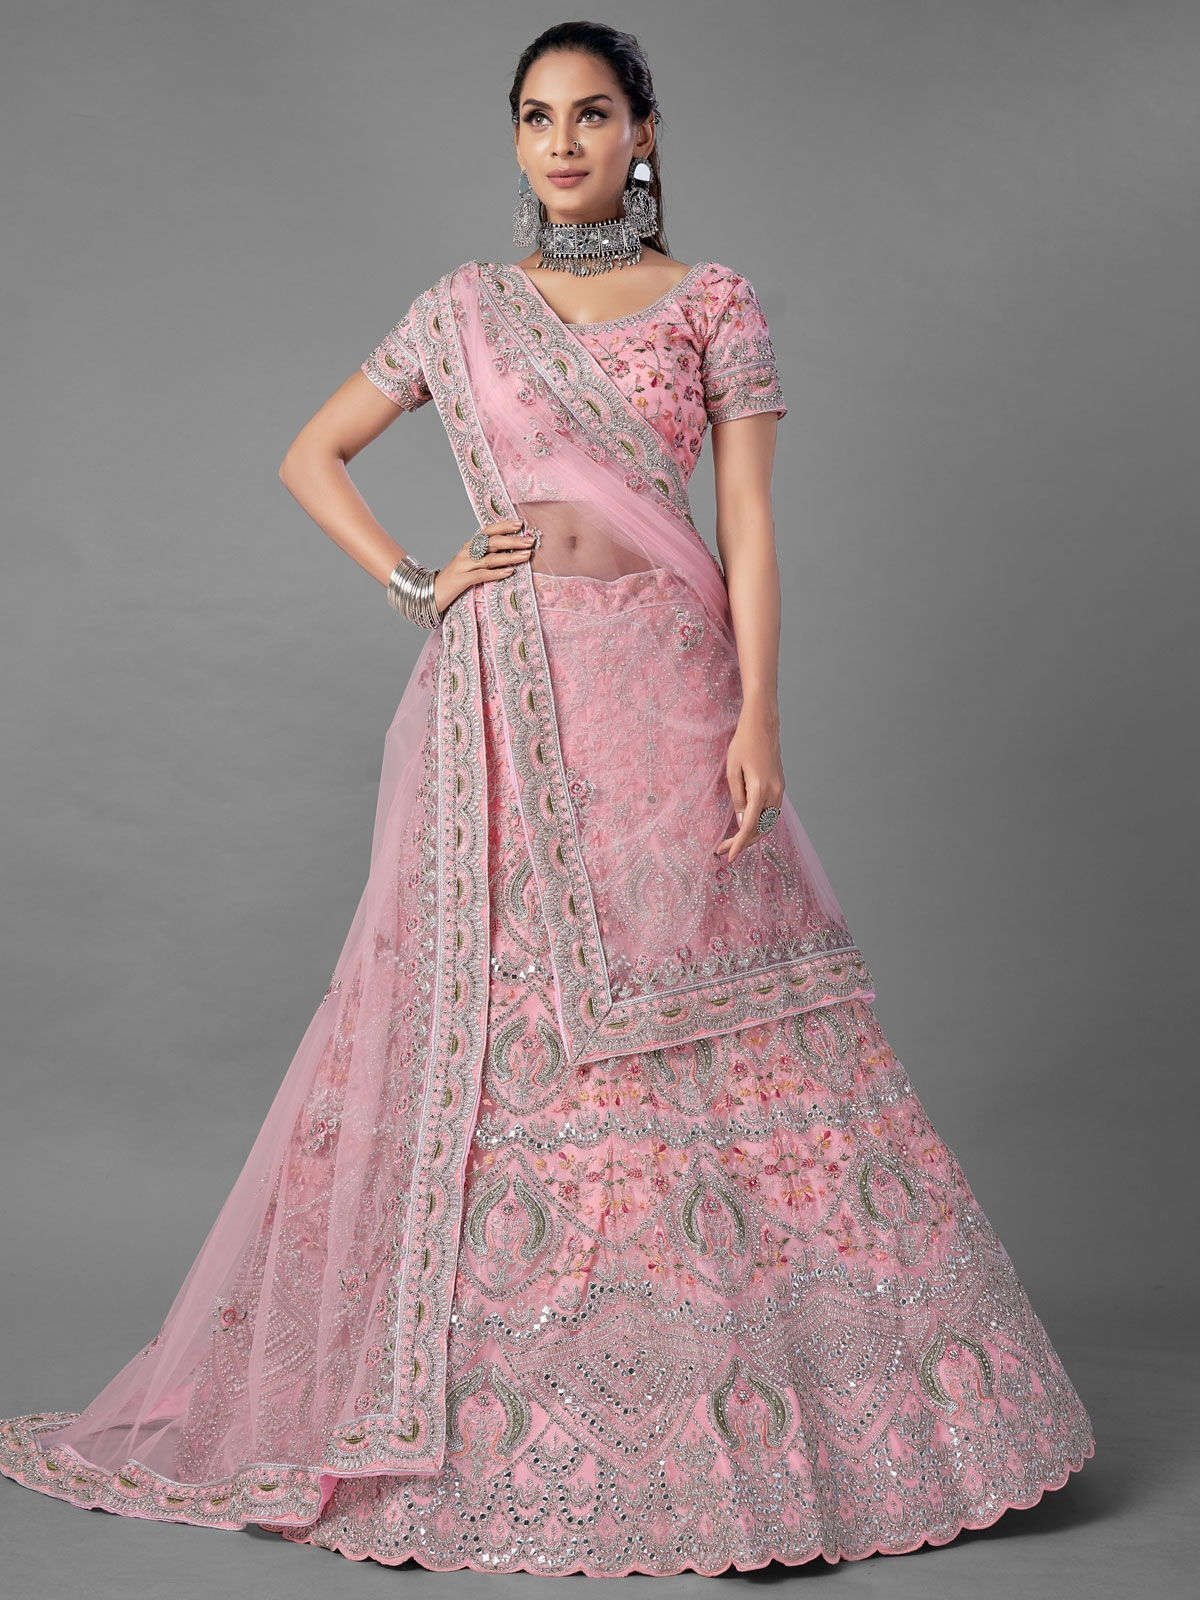 50+ Unique Engagement Lehengas for Brides | Indian dresses, Party wear  indian dresses, Lehenga designs simple